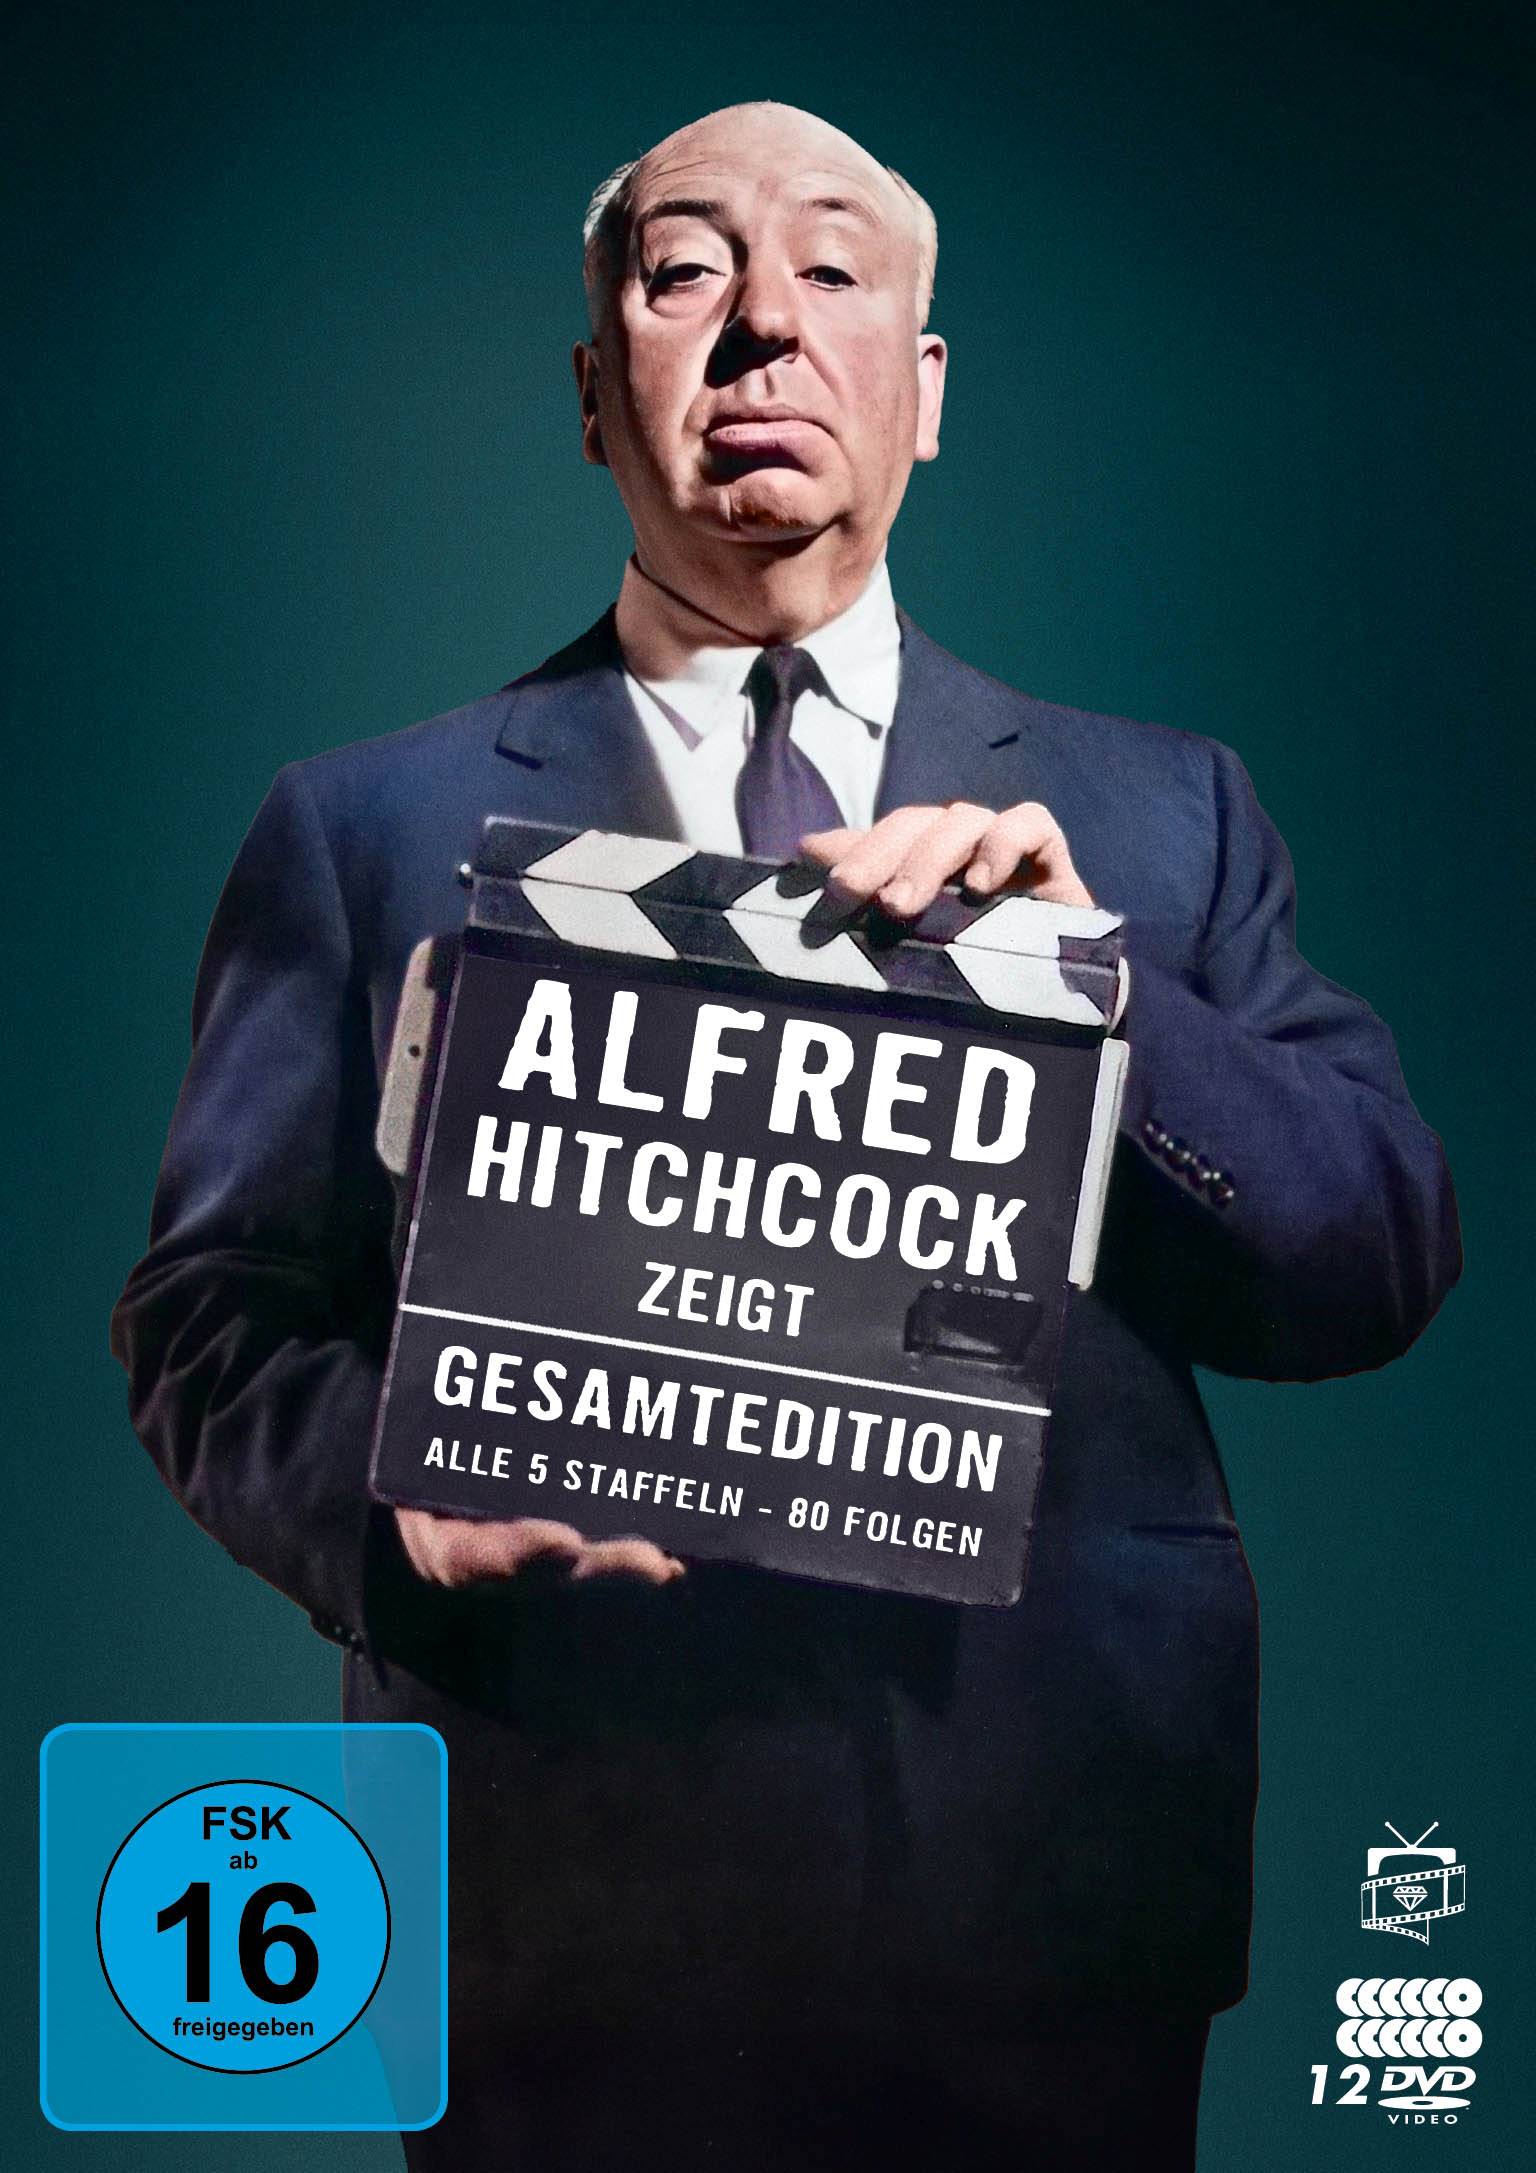 Alfred Hitchcock zeigt - Gesamtedition: Alle 5 Staffeln / 80 Folgen (12 DVDs)